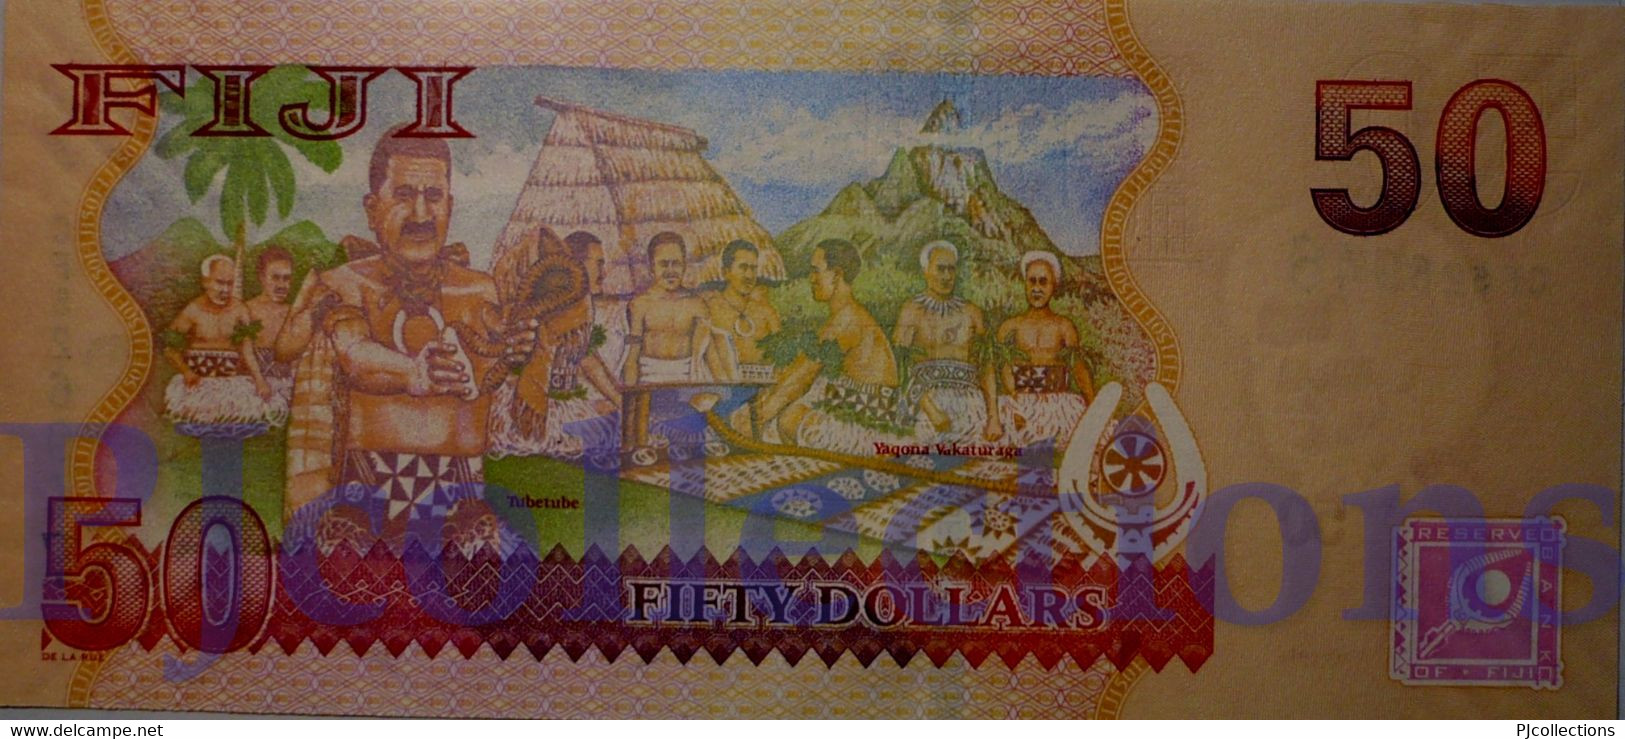 FIJI 50 DOLLARS 2007 PICK 113a UNC - Fidschi